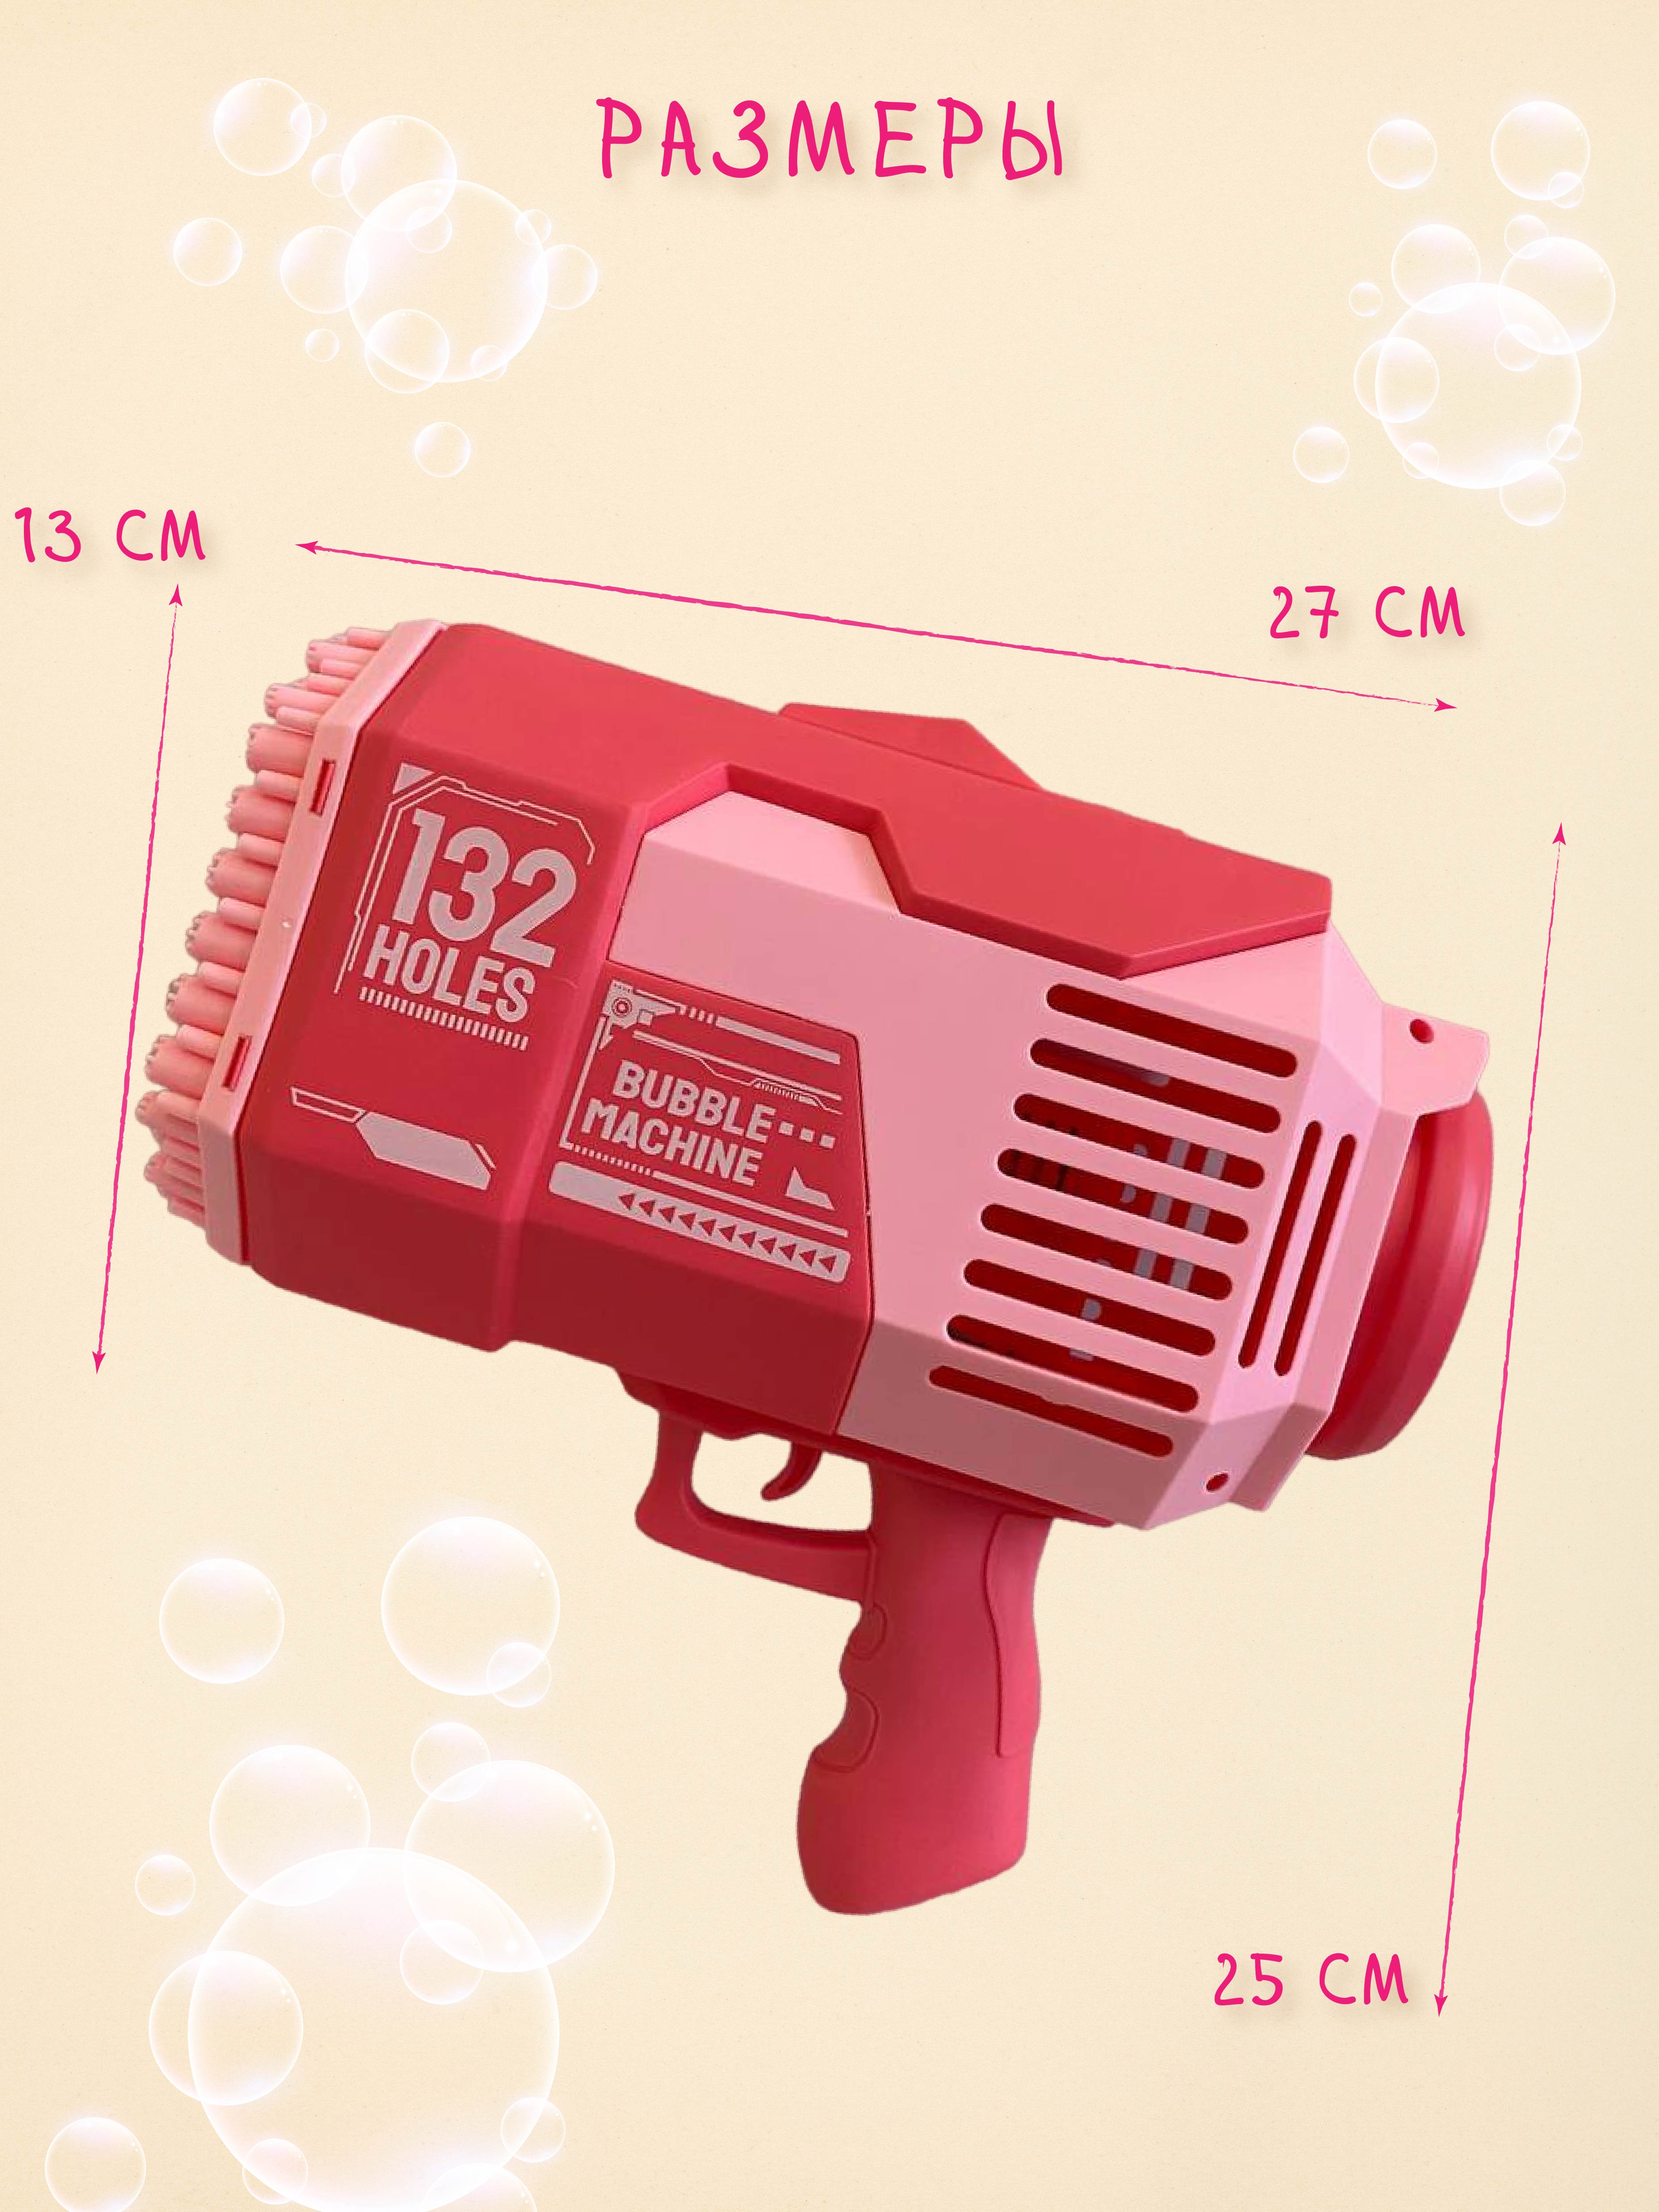 Базука-пистолет Mamas Sweety генератор мыльных пузырей розовый - фото 4